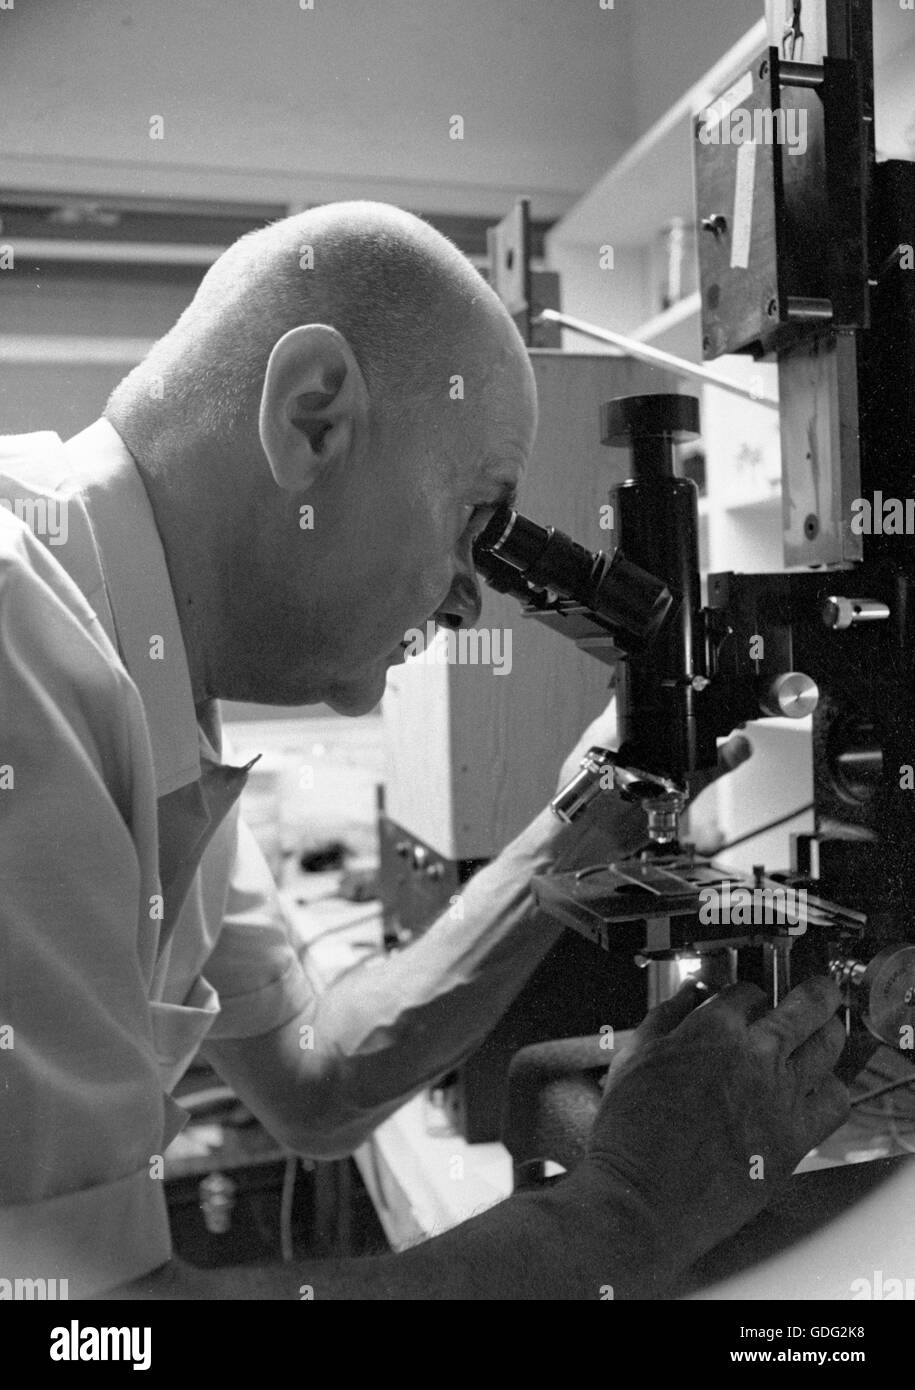 Roman Vishniac trabajando en su laboratorio, 1961 Foto de stock